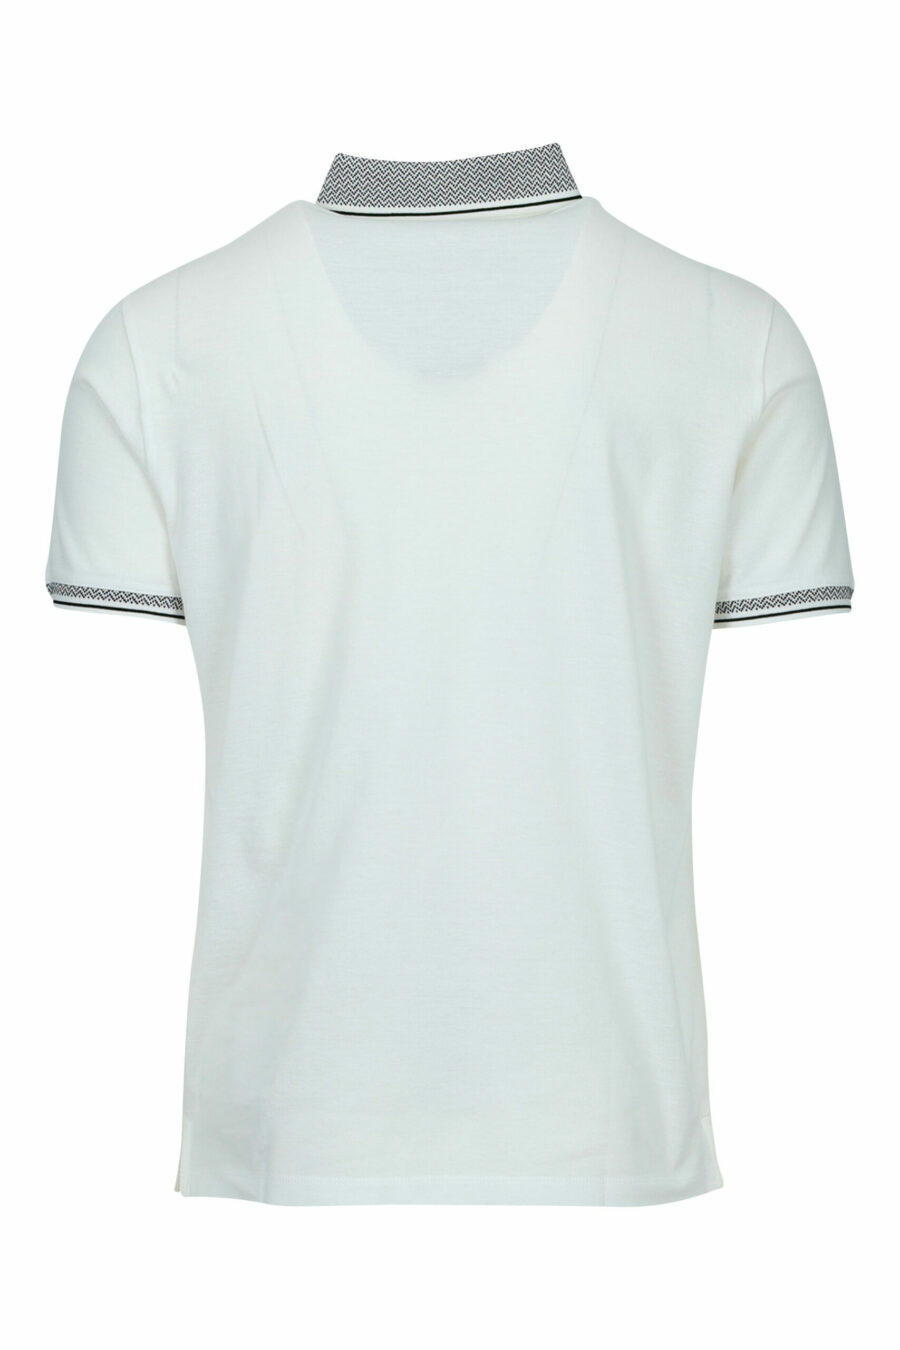 Weißes Poloshirt mit klassisch grauem Kragen - 8058947967995 1 skaliert